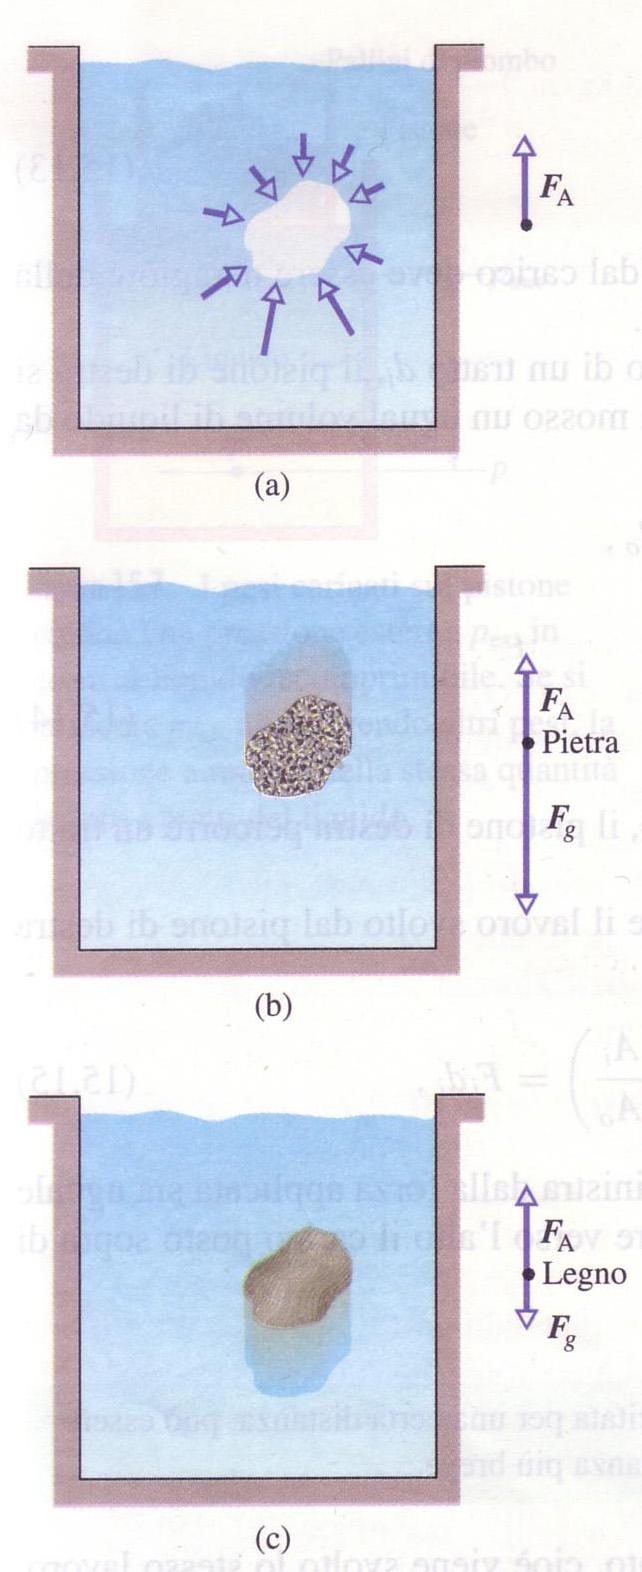 rincipio di Archimede Un corpo immerso in un fluido riceve una spinta ver=cale, dal basso verso l alto, pari al peso del liquido spostato.